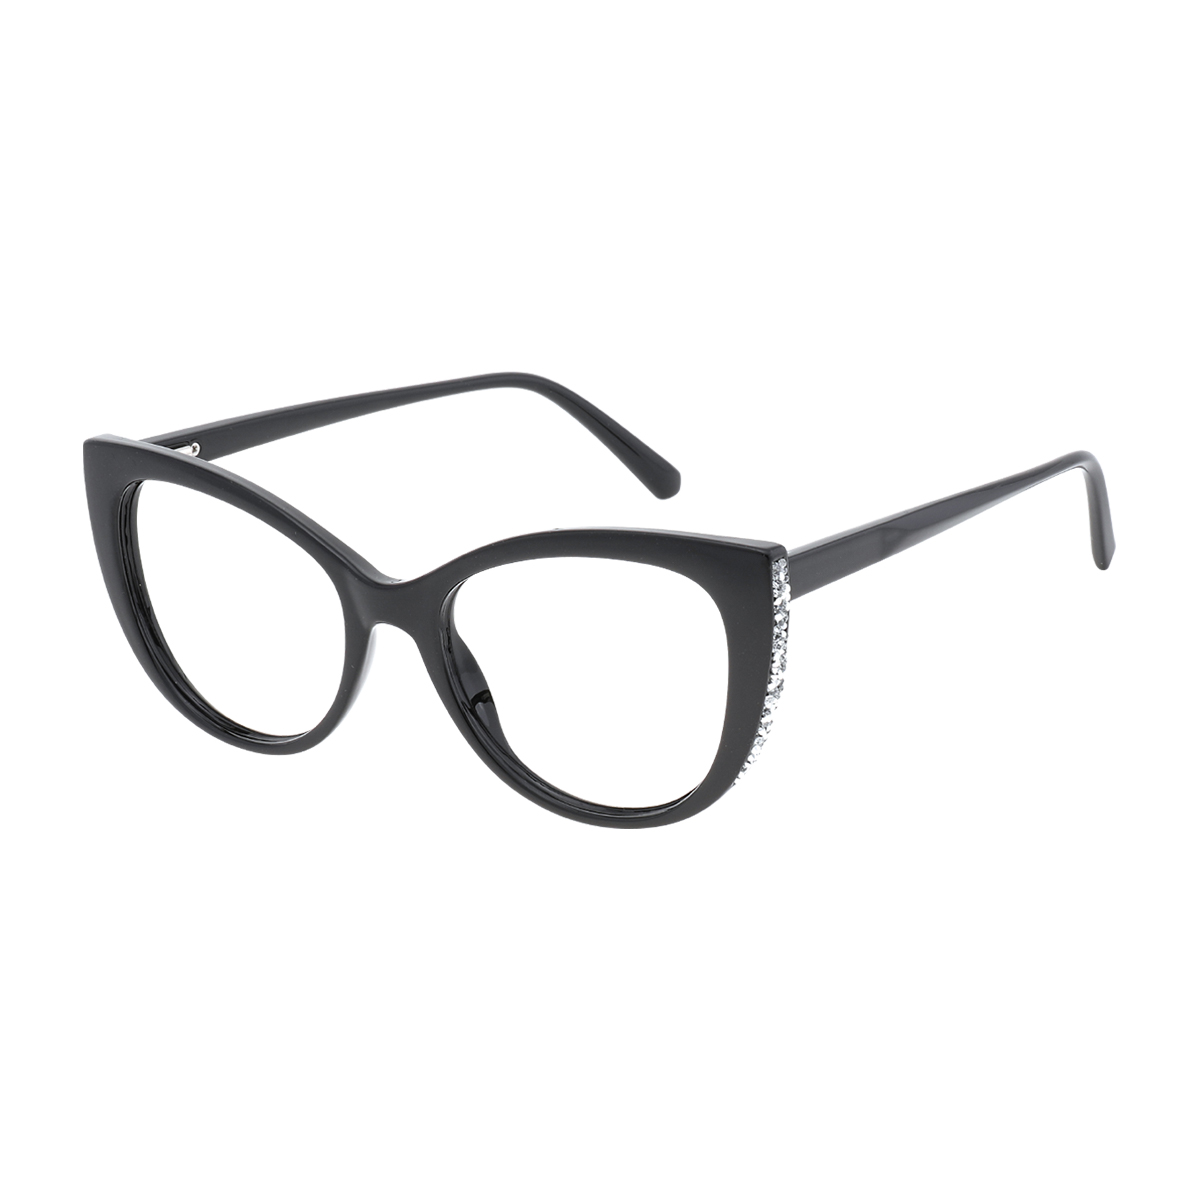 Graces - Cat-eye Black Reading Glasses for Women